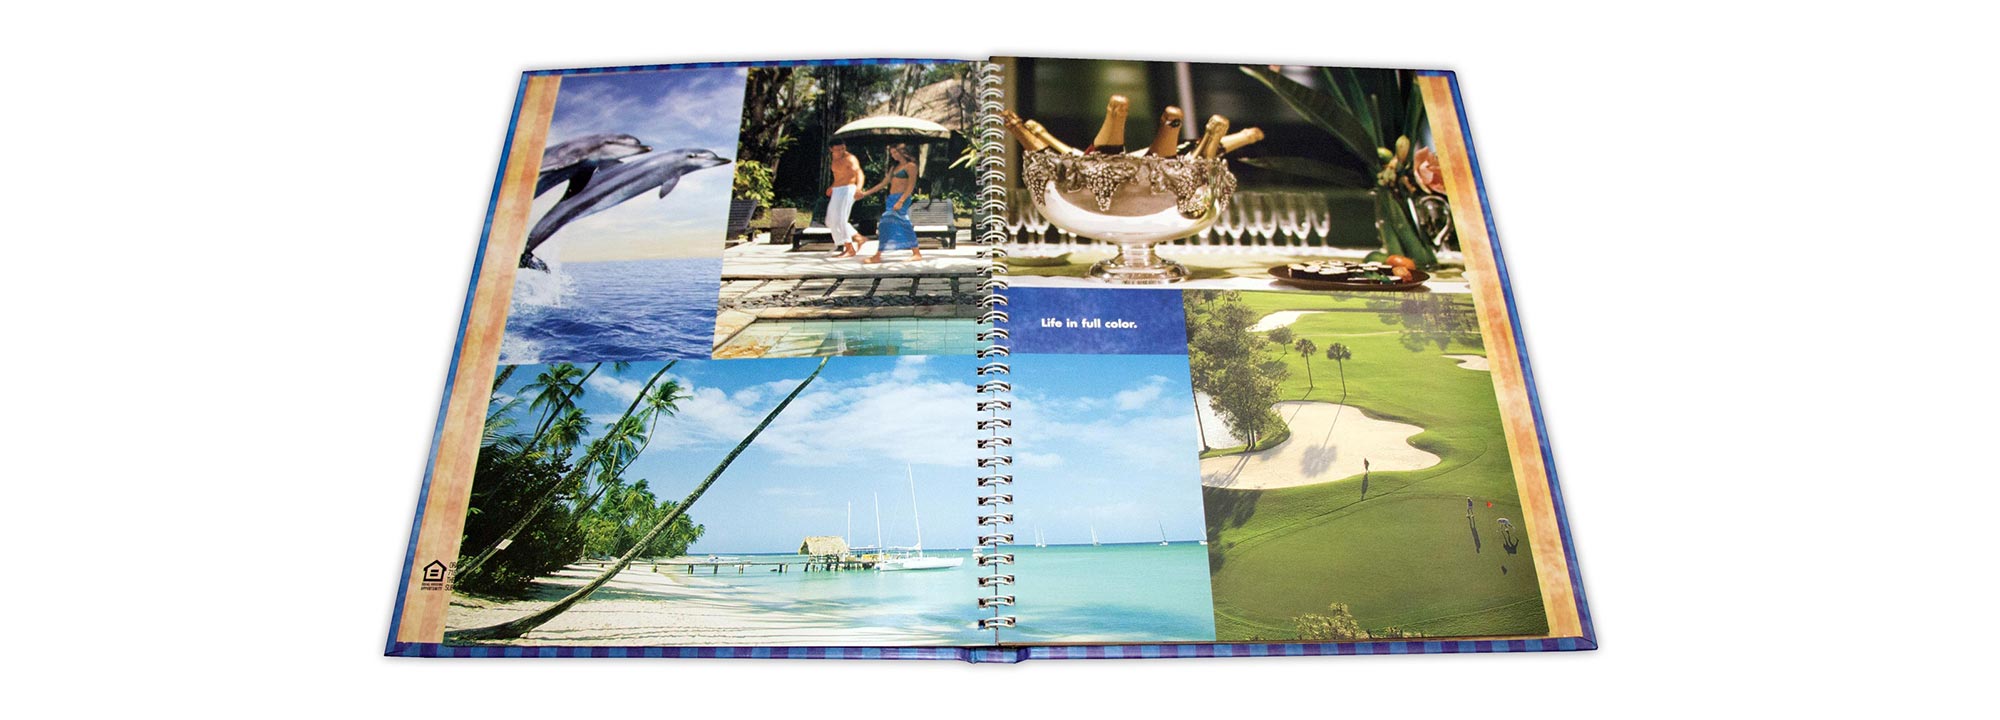 Naples Bay Resort Book